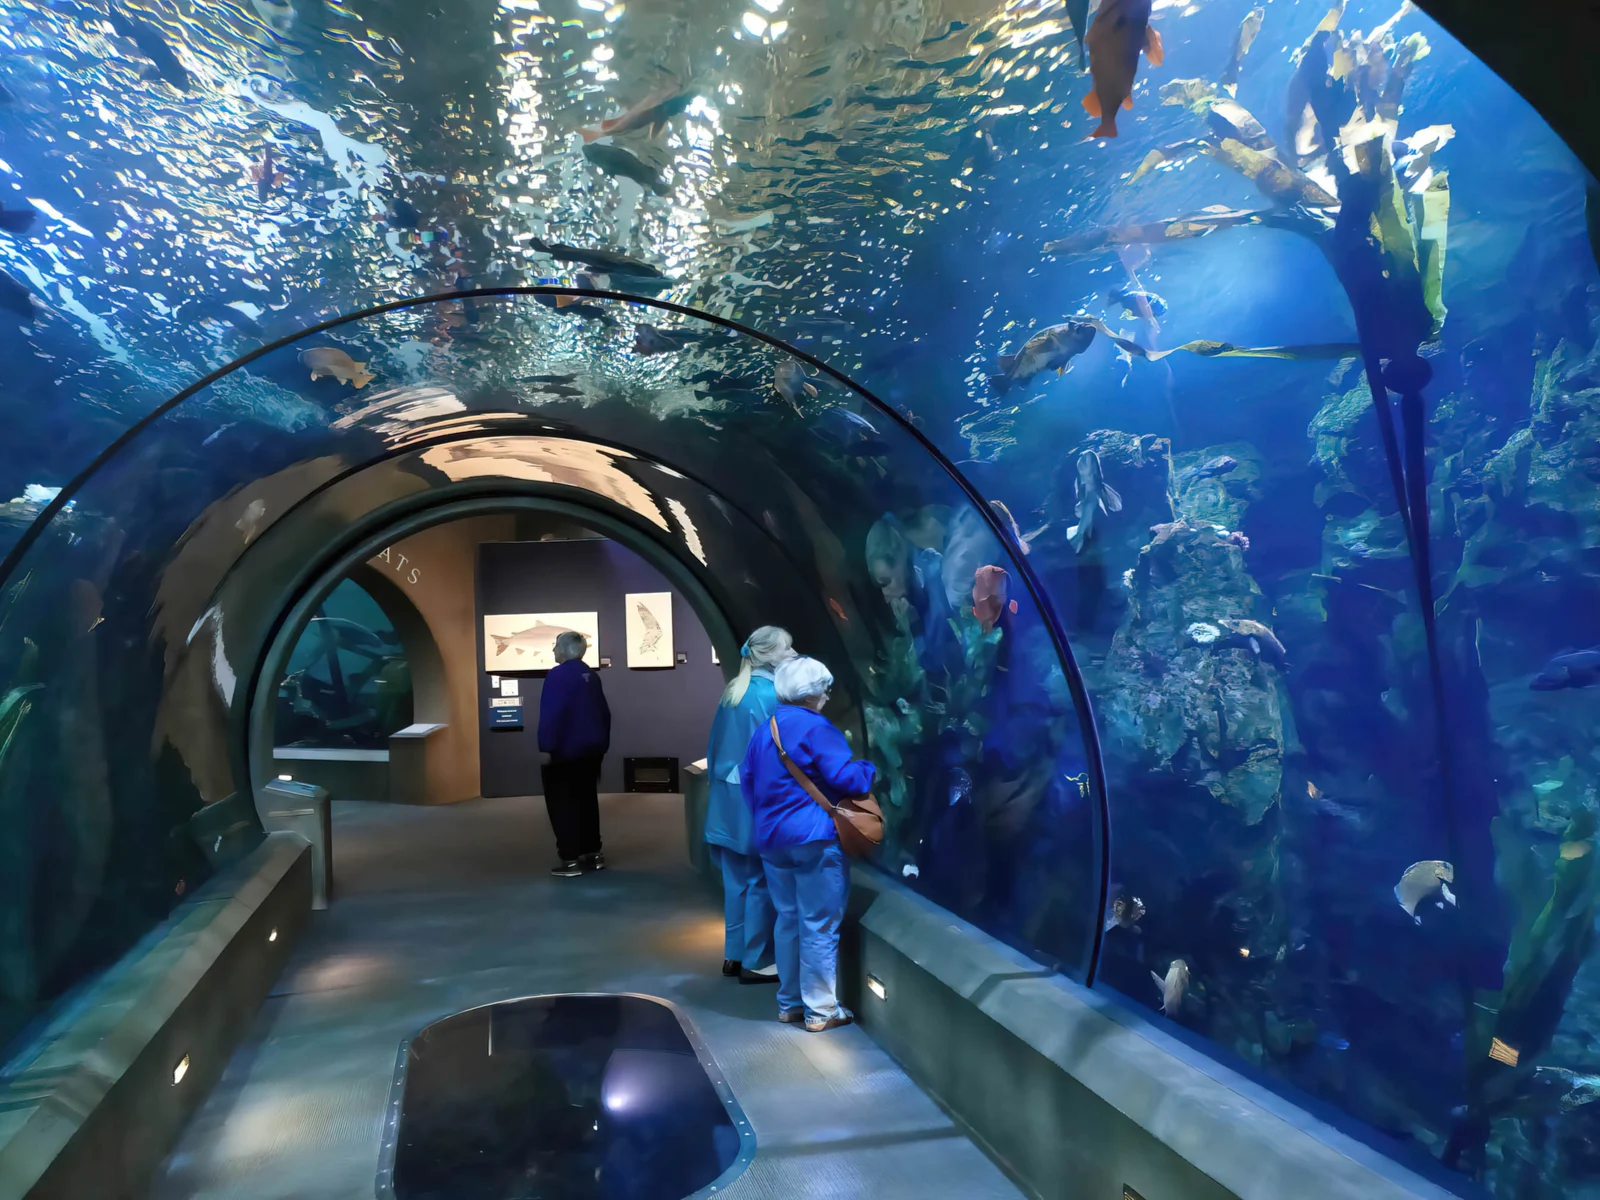 Tunnel in the Newport aquarium, one of the best aquariums in America